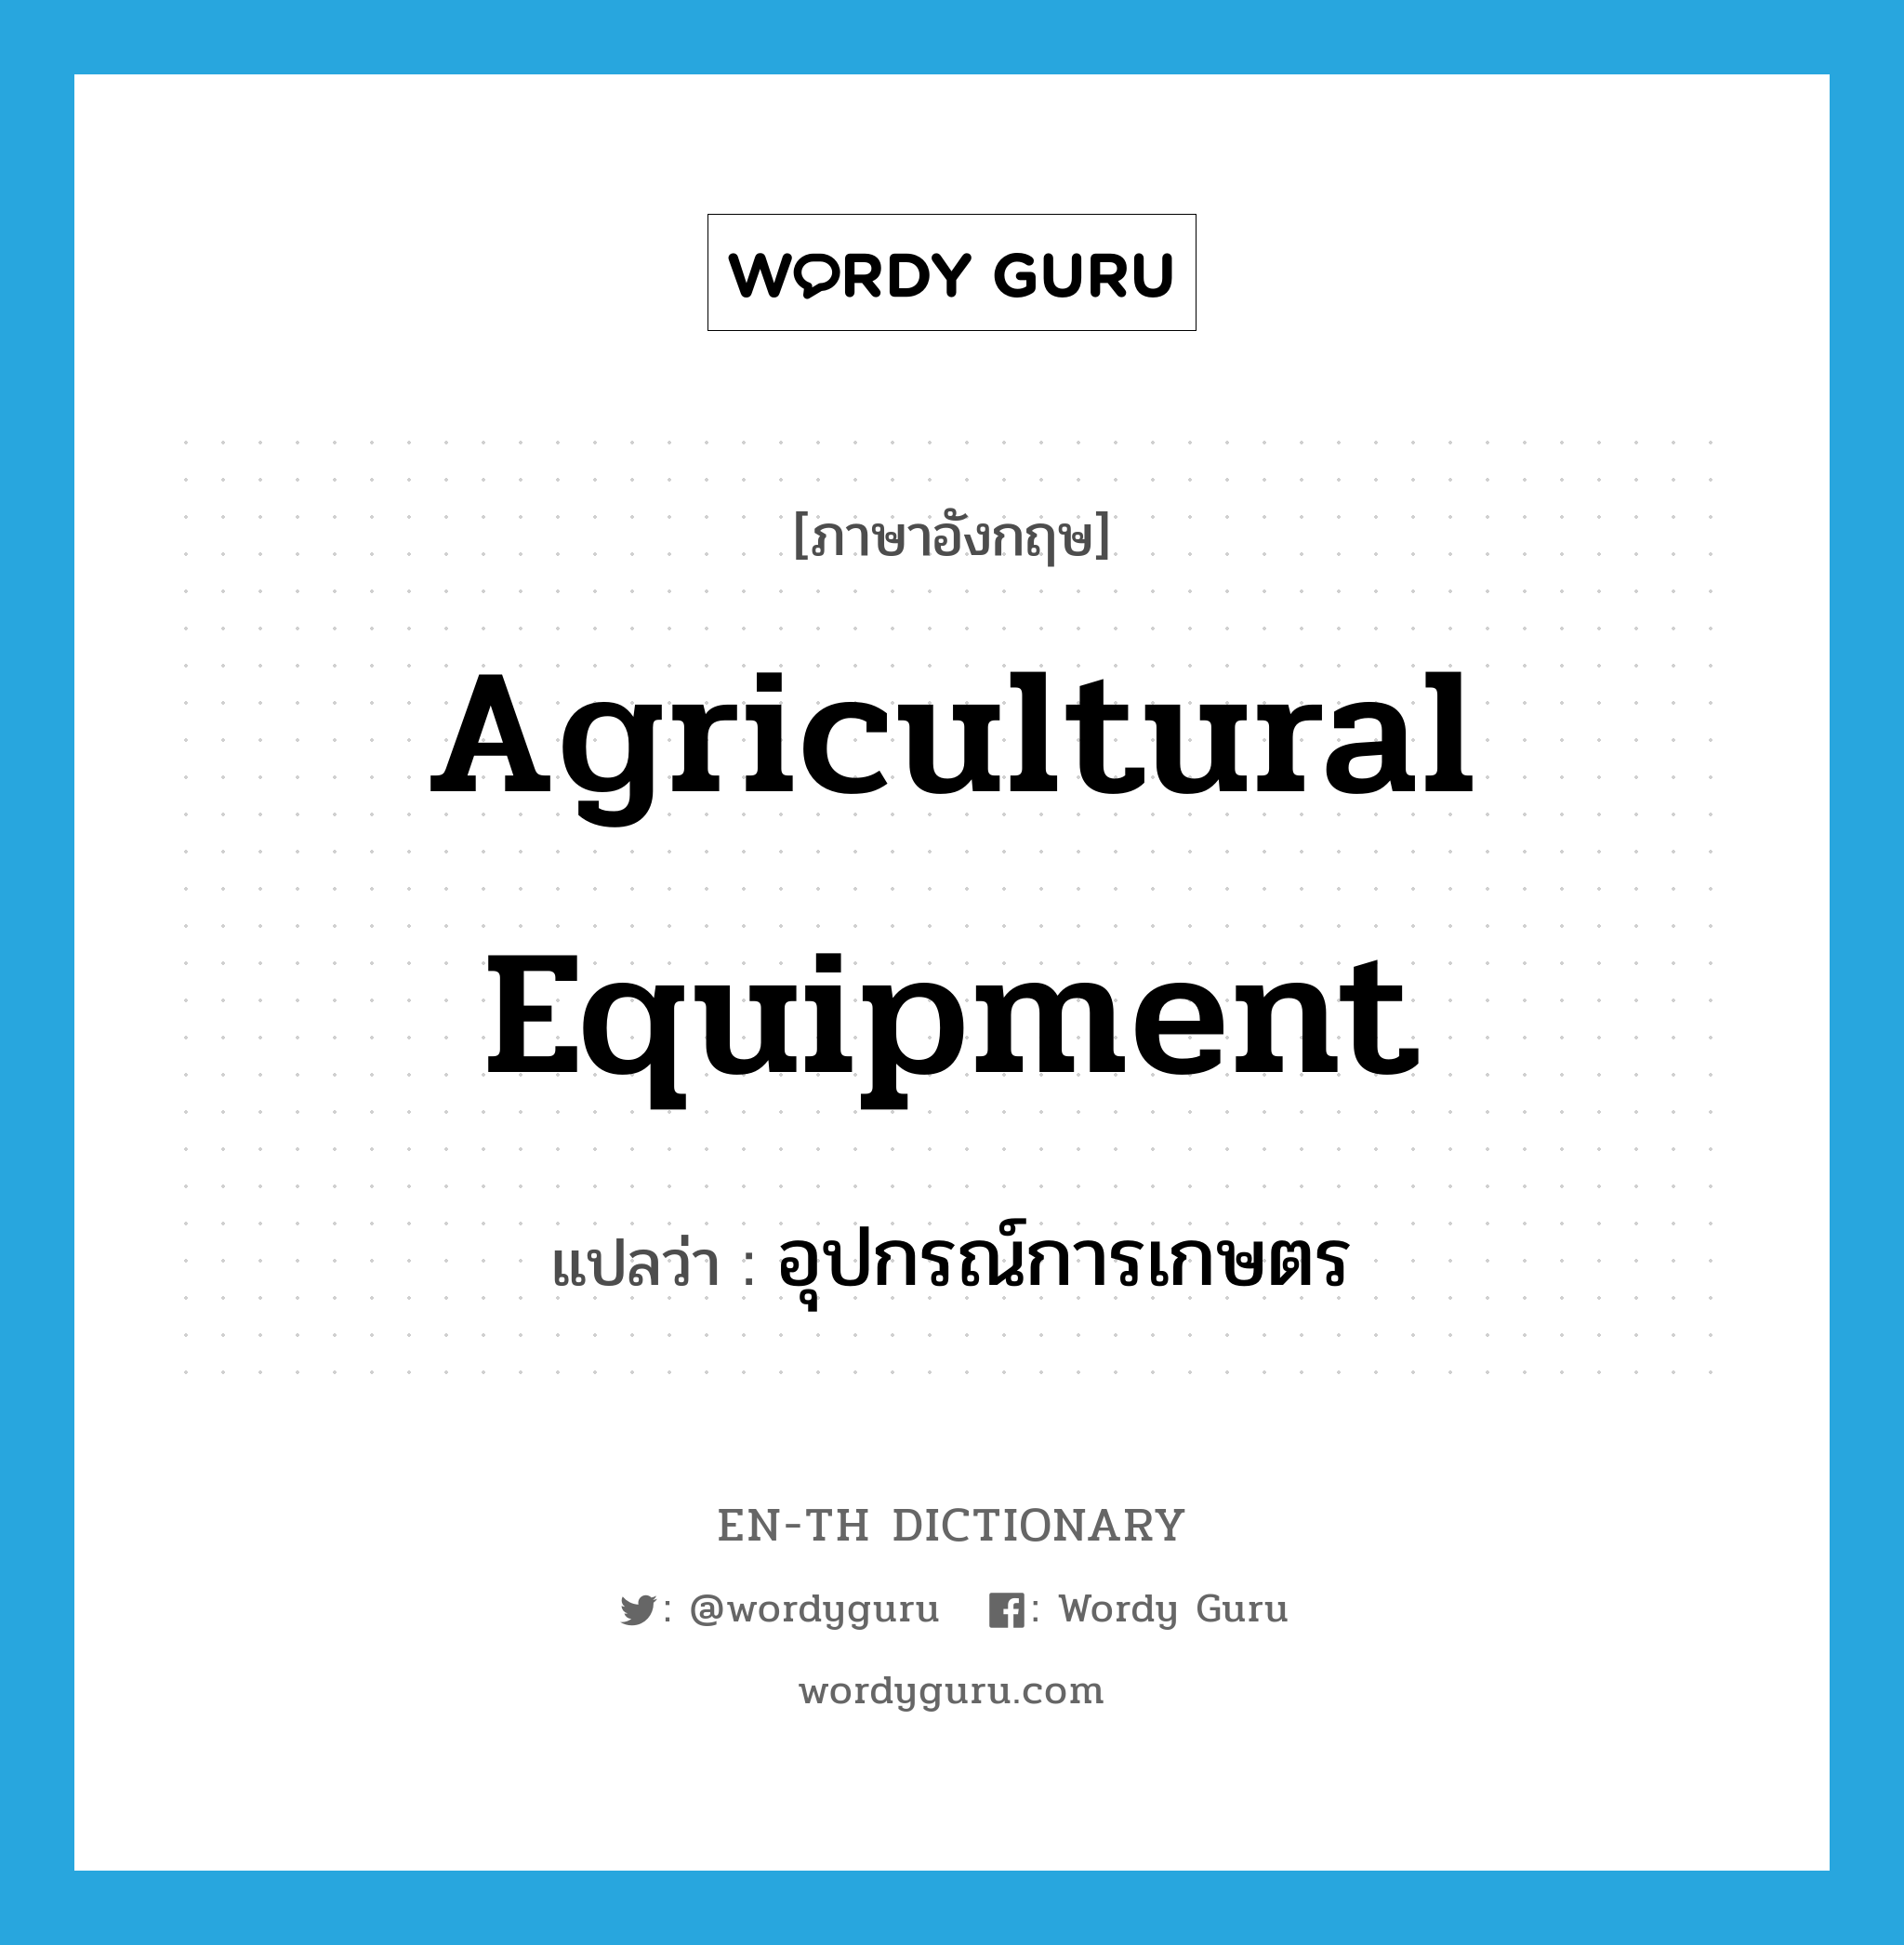 agricultural equipment แปลว่า?, คำศัพท์ภาษาอังกฤษ agricultural equipment แปลว่า อุปกรณ์การเกษตร ประเภท N หมวด N